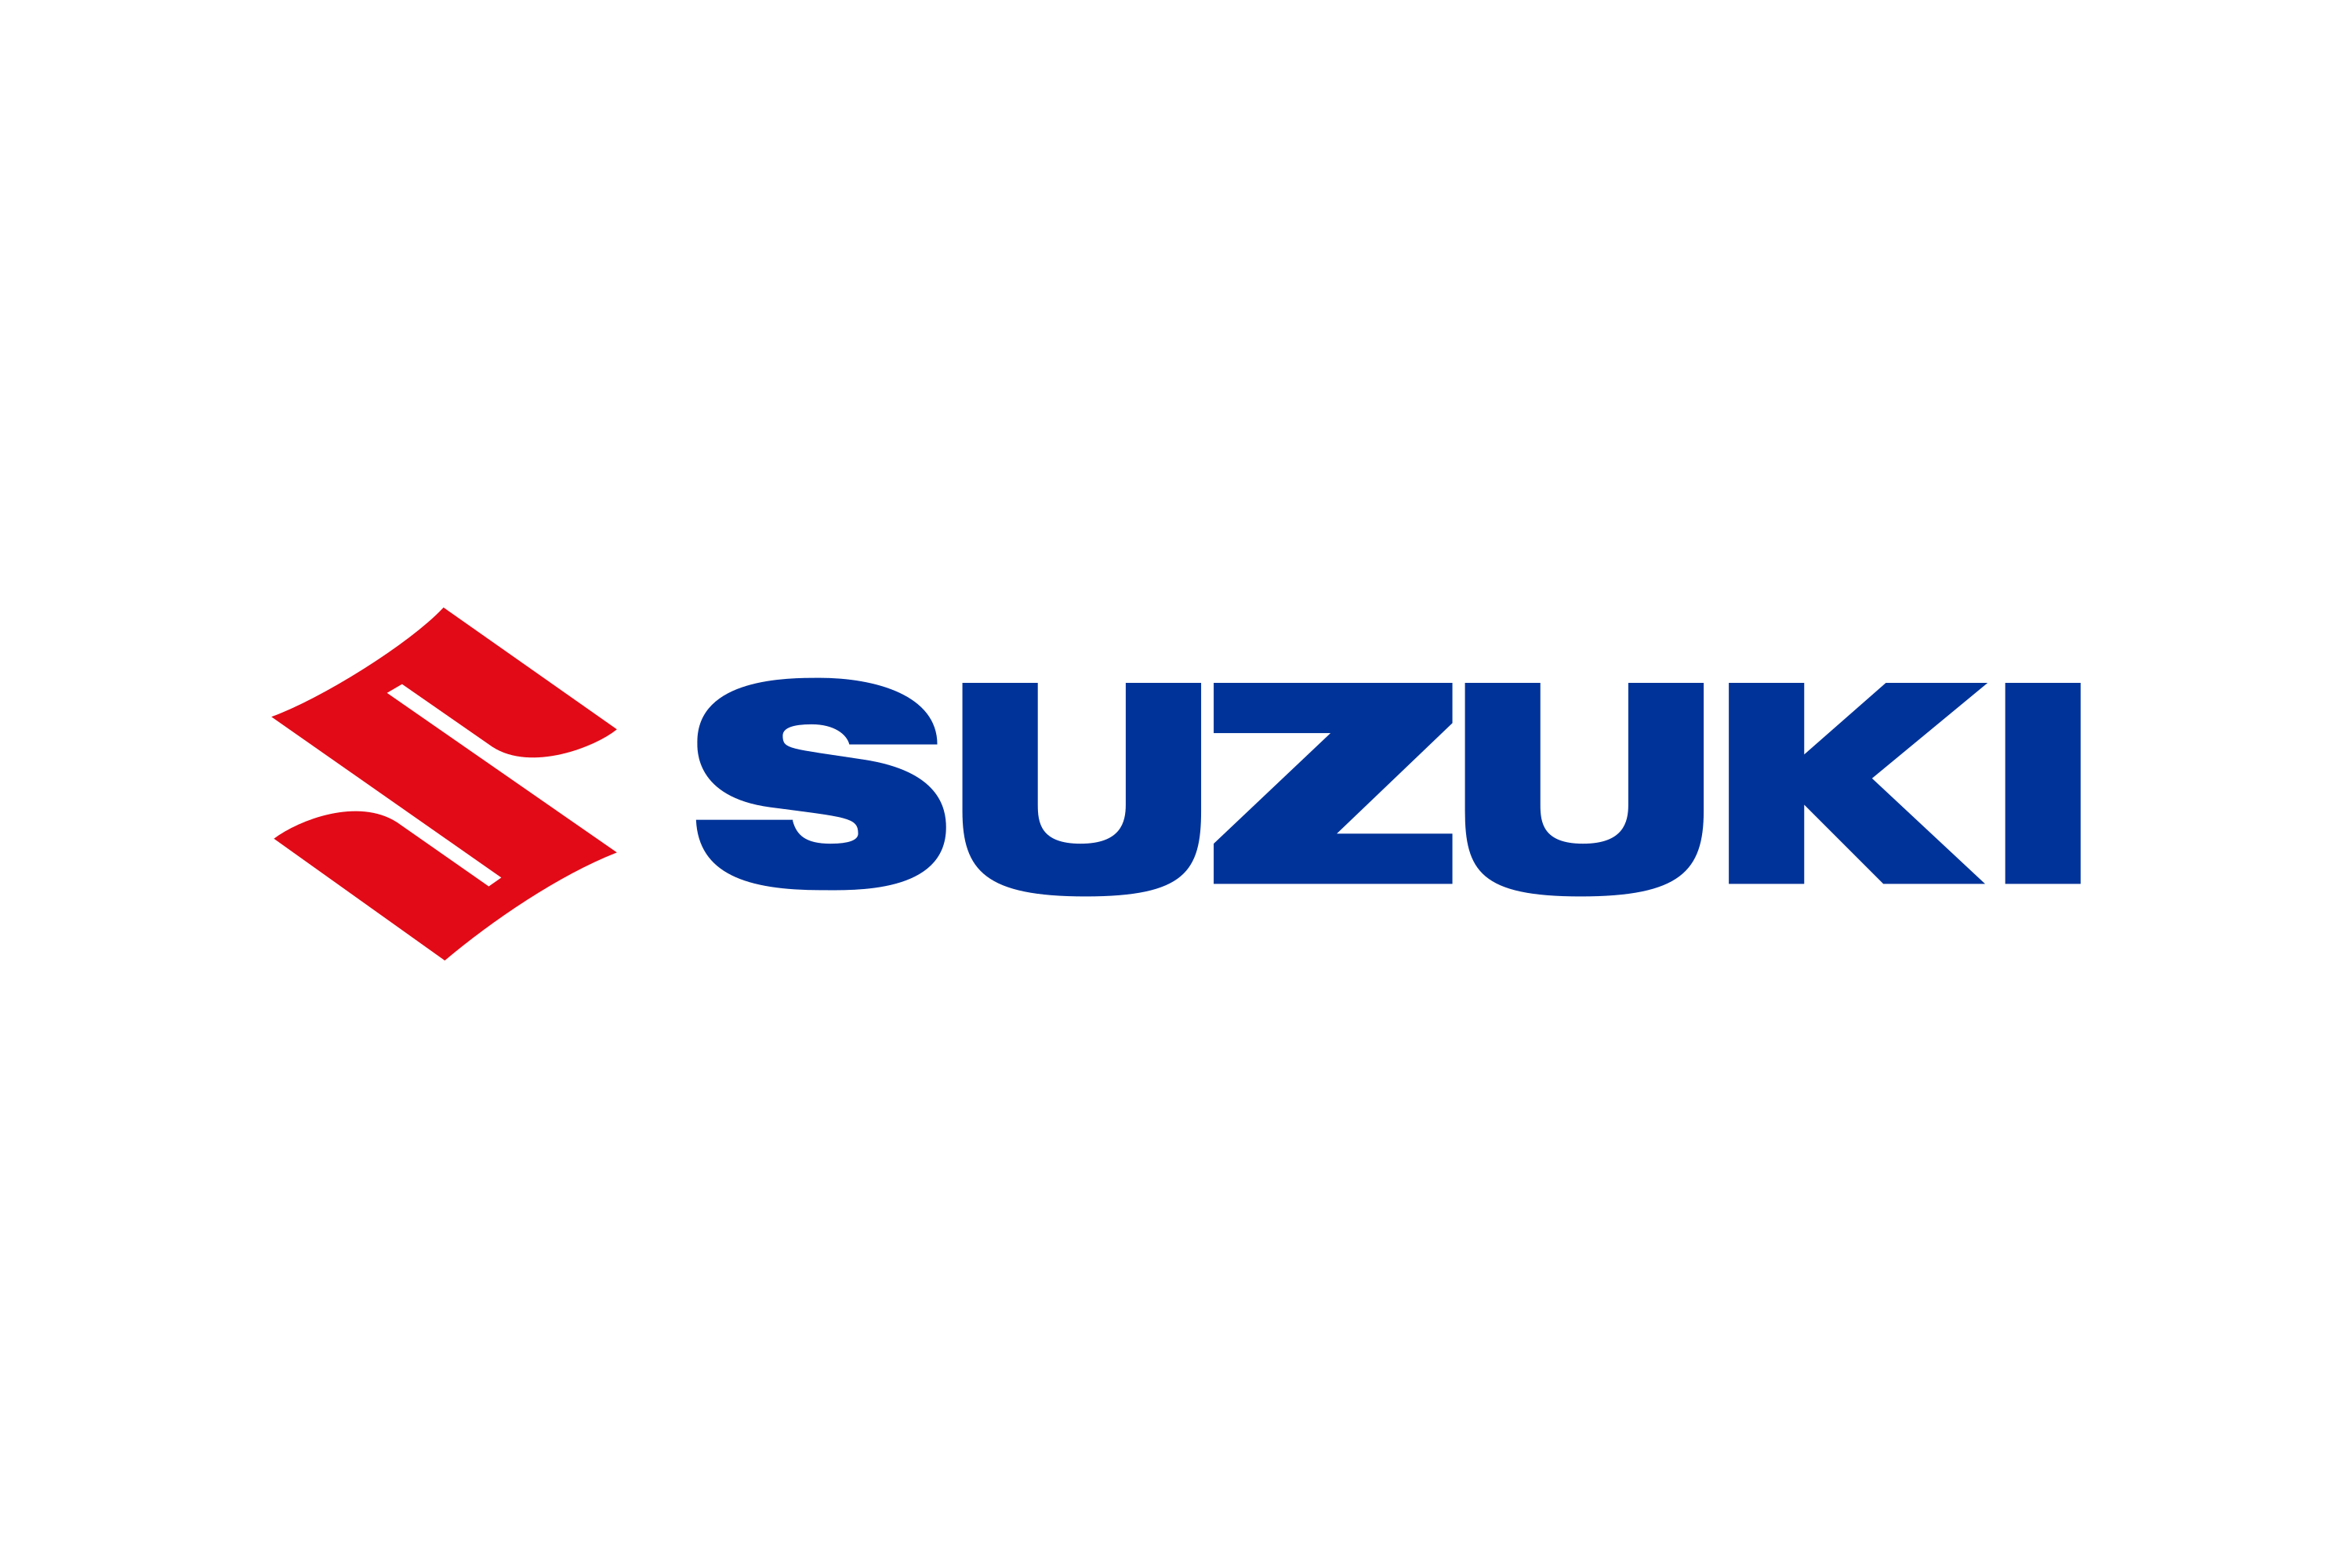 Thương hiệu suzuki logo được nhập khẩu và bán chính hãng tại Việt Nam